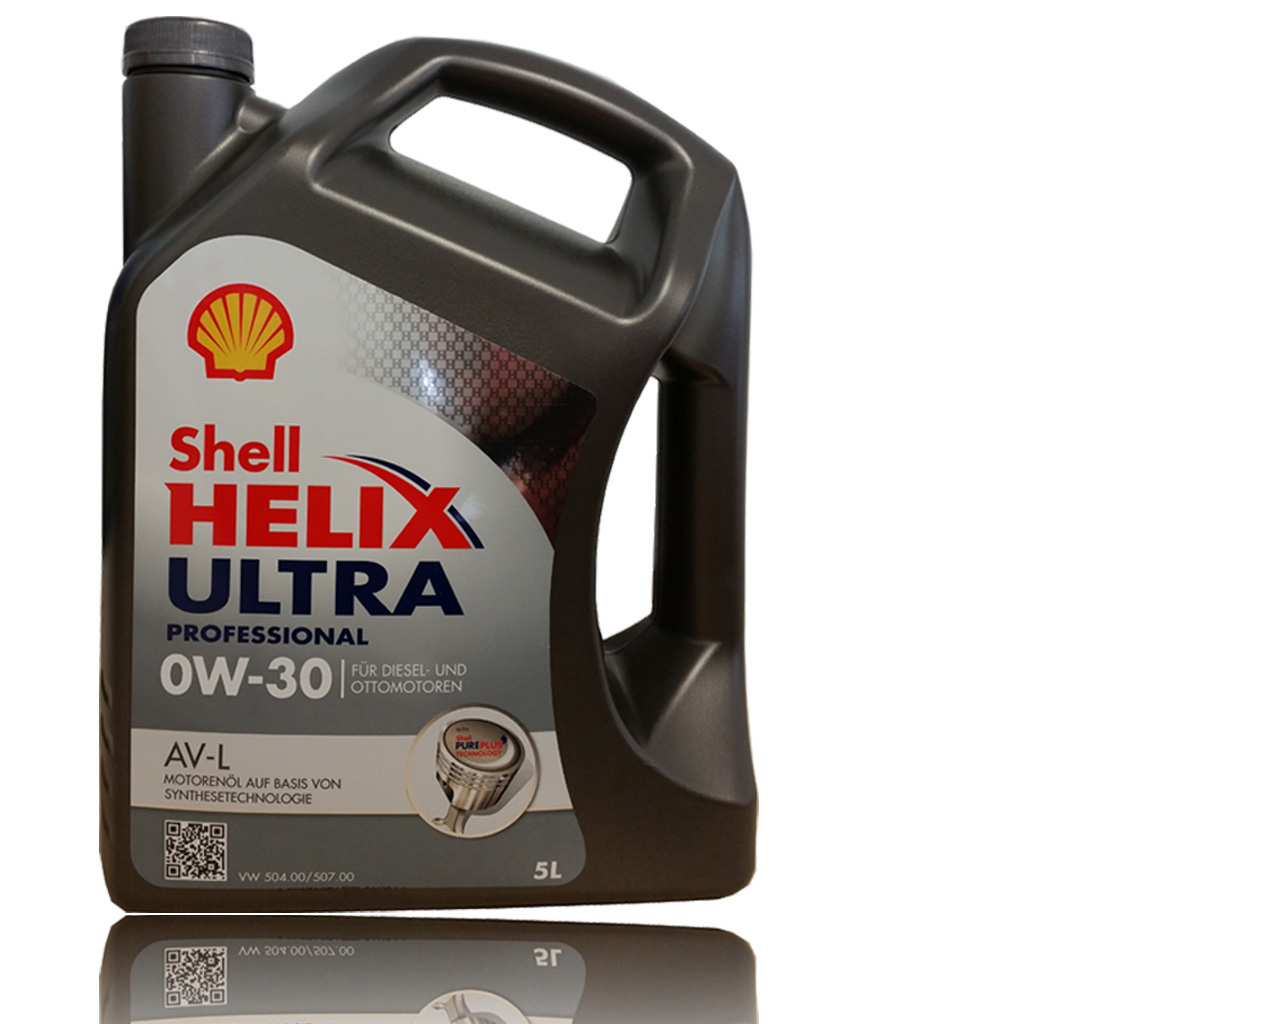 Купить масло 5w30 507. Helix Ultra professional av-l 0w-30. Shell Helix Ultra 0w-30 504/507. Shell Helix Ultra av 0w-30. VW 504.00/507.00 Shell.